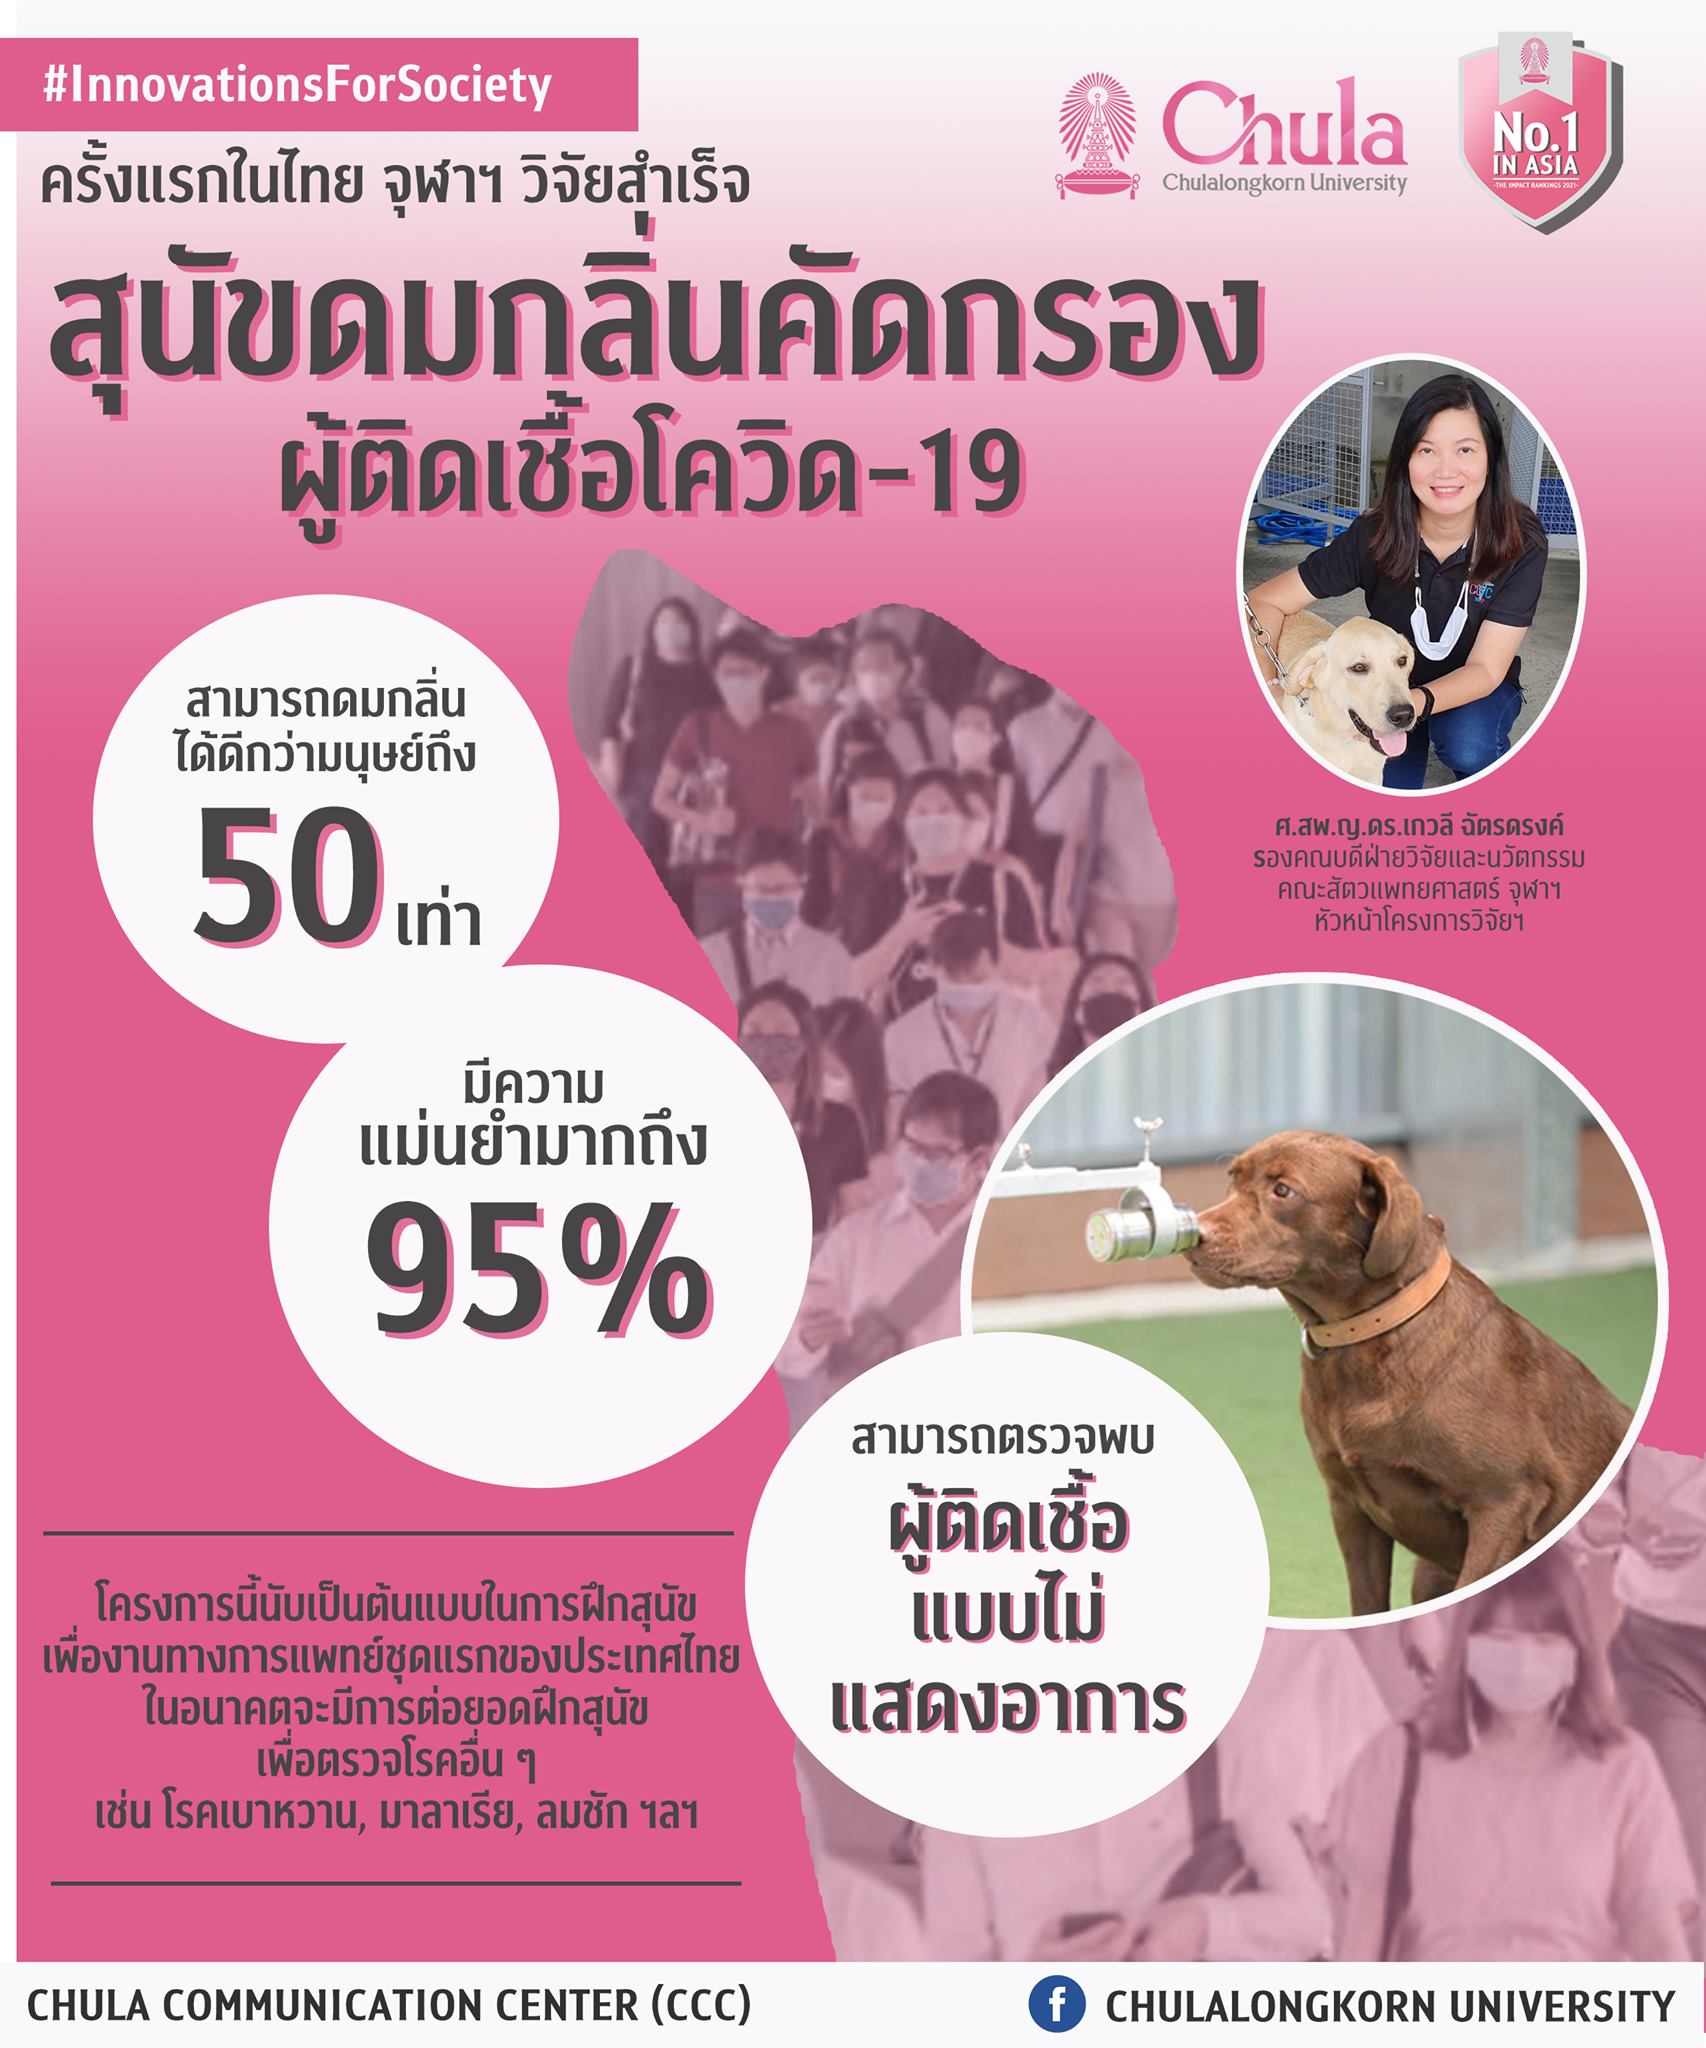 มหาวิทยาลัยจุฬาลงกรณ์ ประสบความสำเร็จในการฝึกสุนัข 3 ตัว เพื่อช่วยเร่งกระบวนการคัดกรอง COVID-19。（รูปภาพ/นำมาจาก Facebook  Chulalongkorn University）